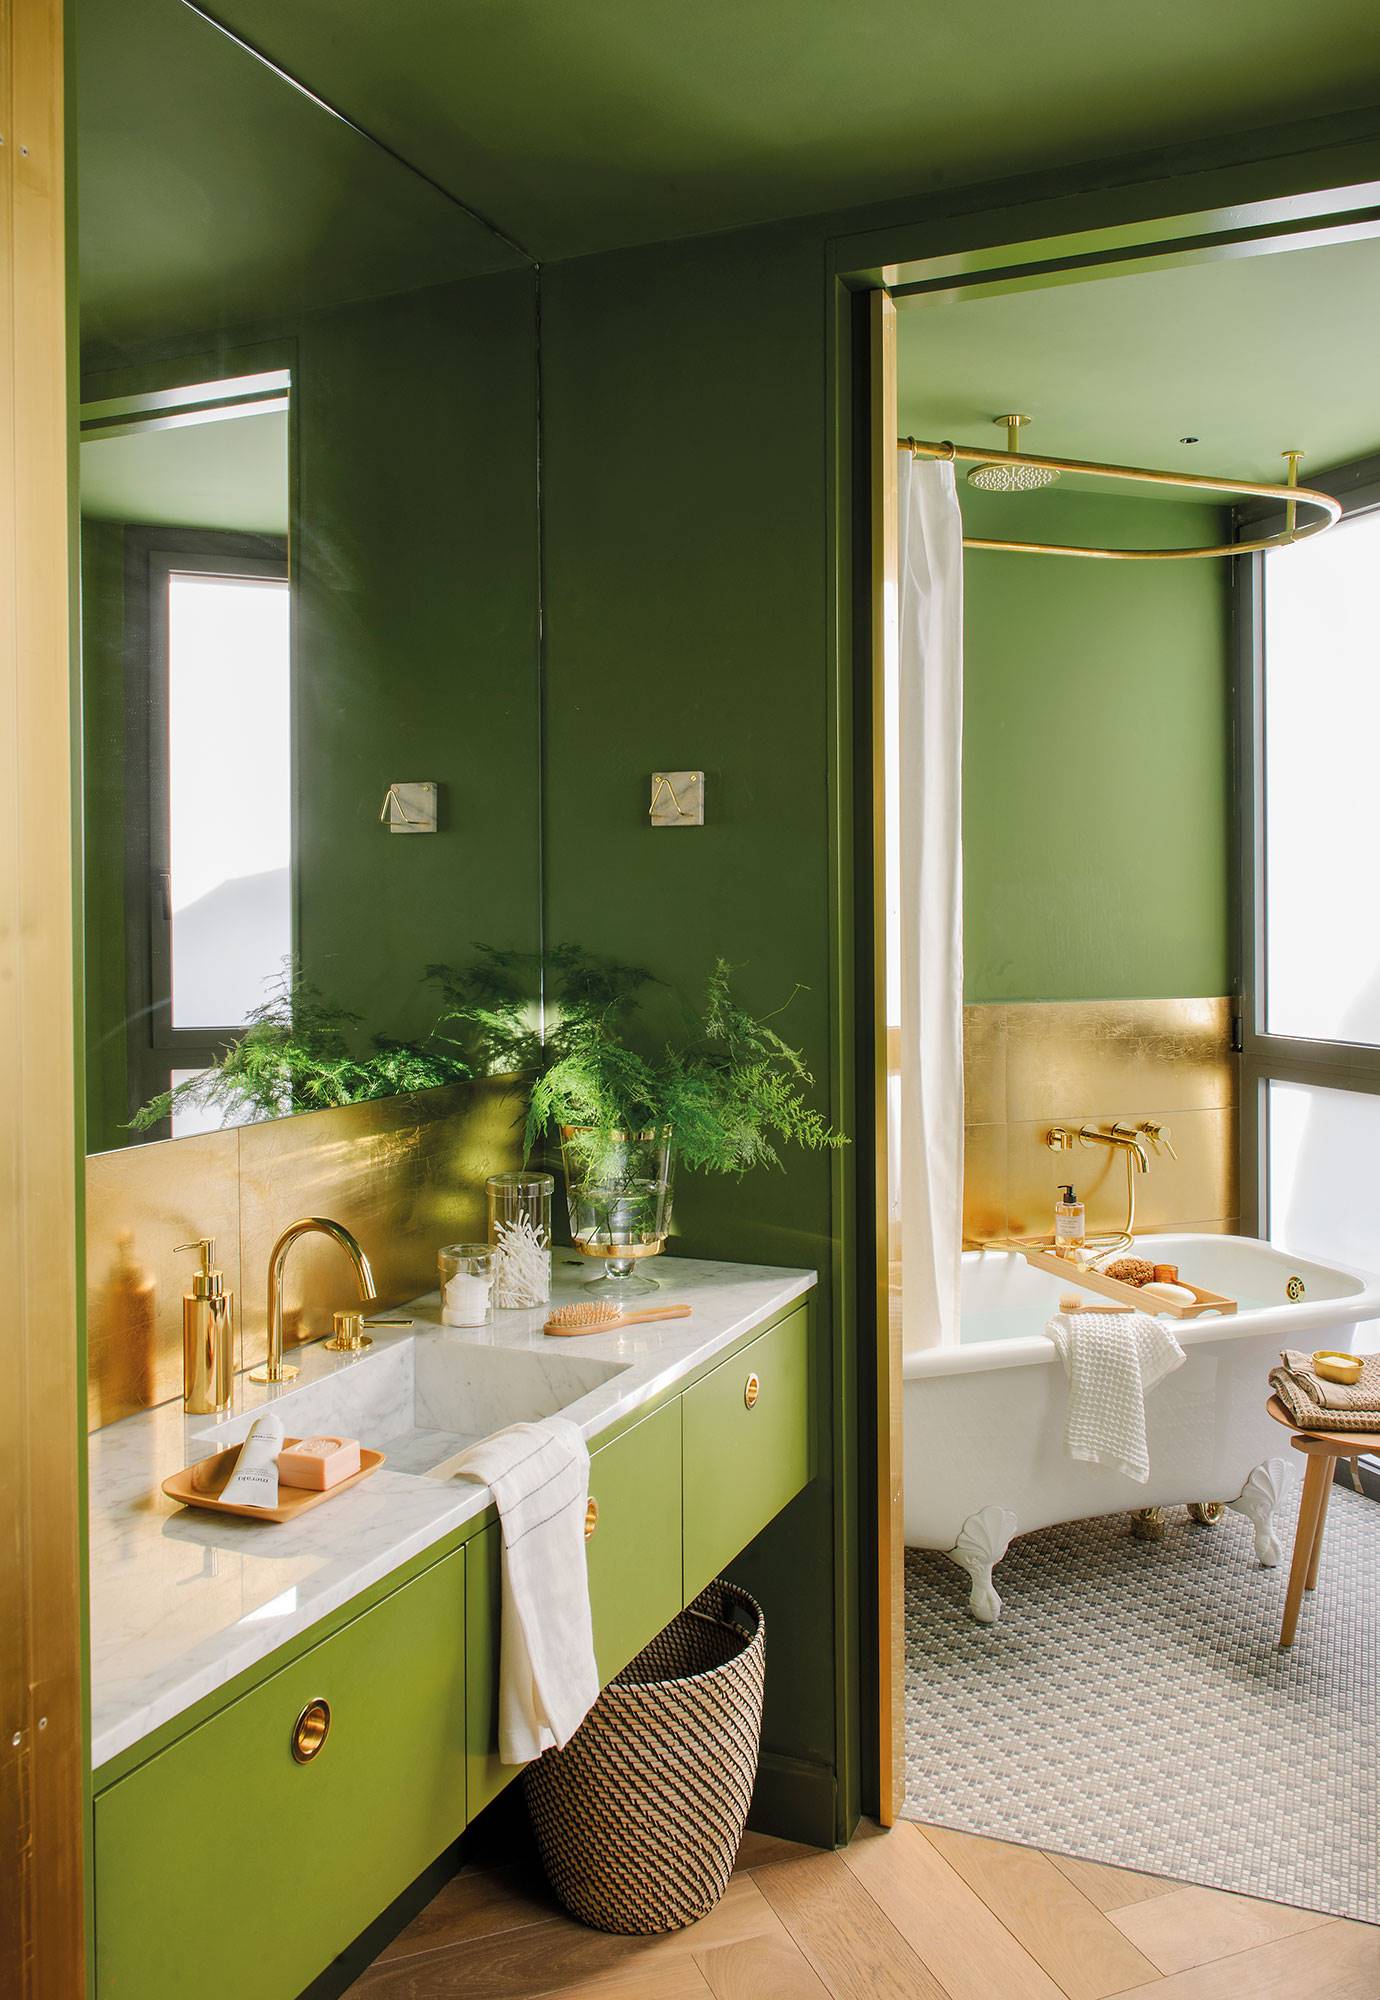 Baño con paredes y mueble de color verde, encimera de mármol y antepecho y grifería dorados.